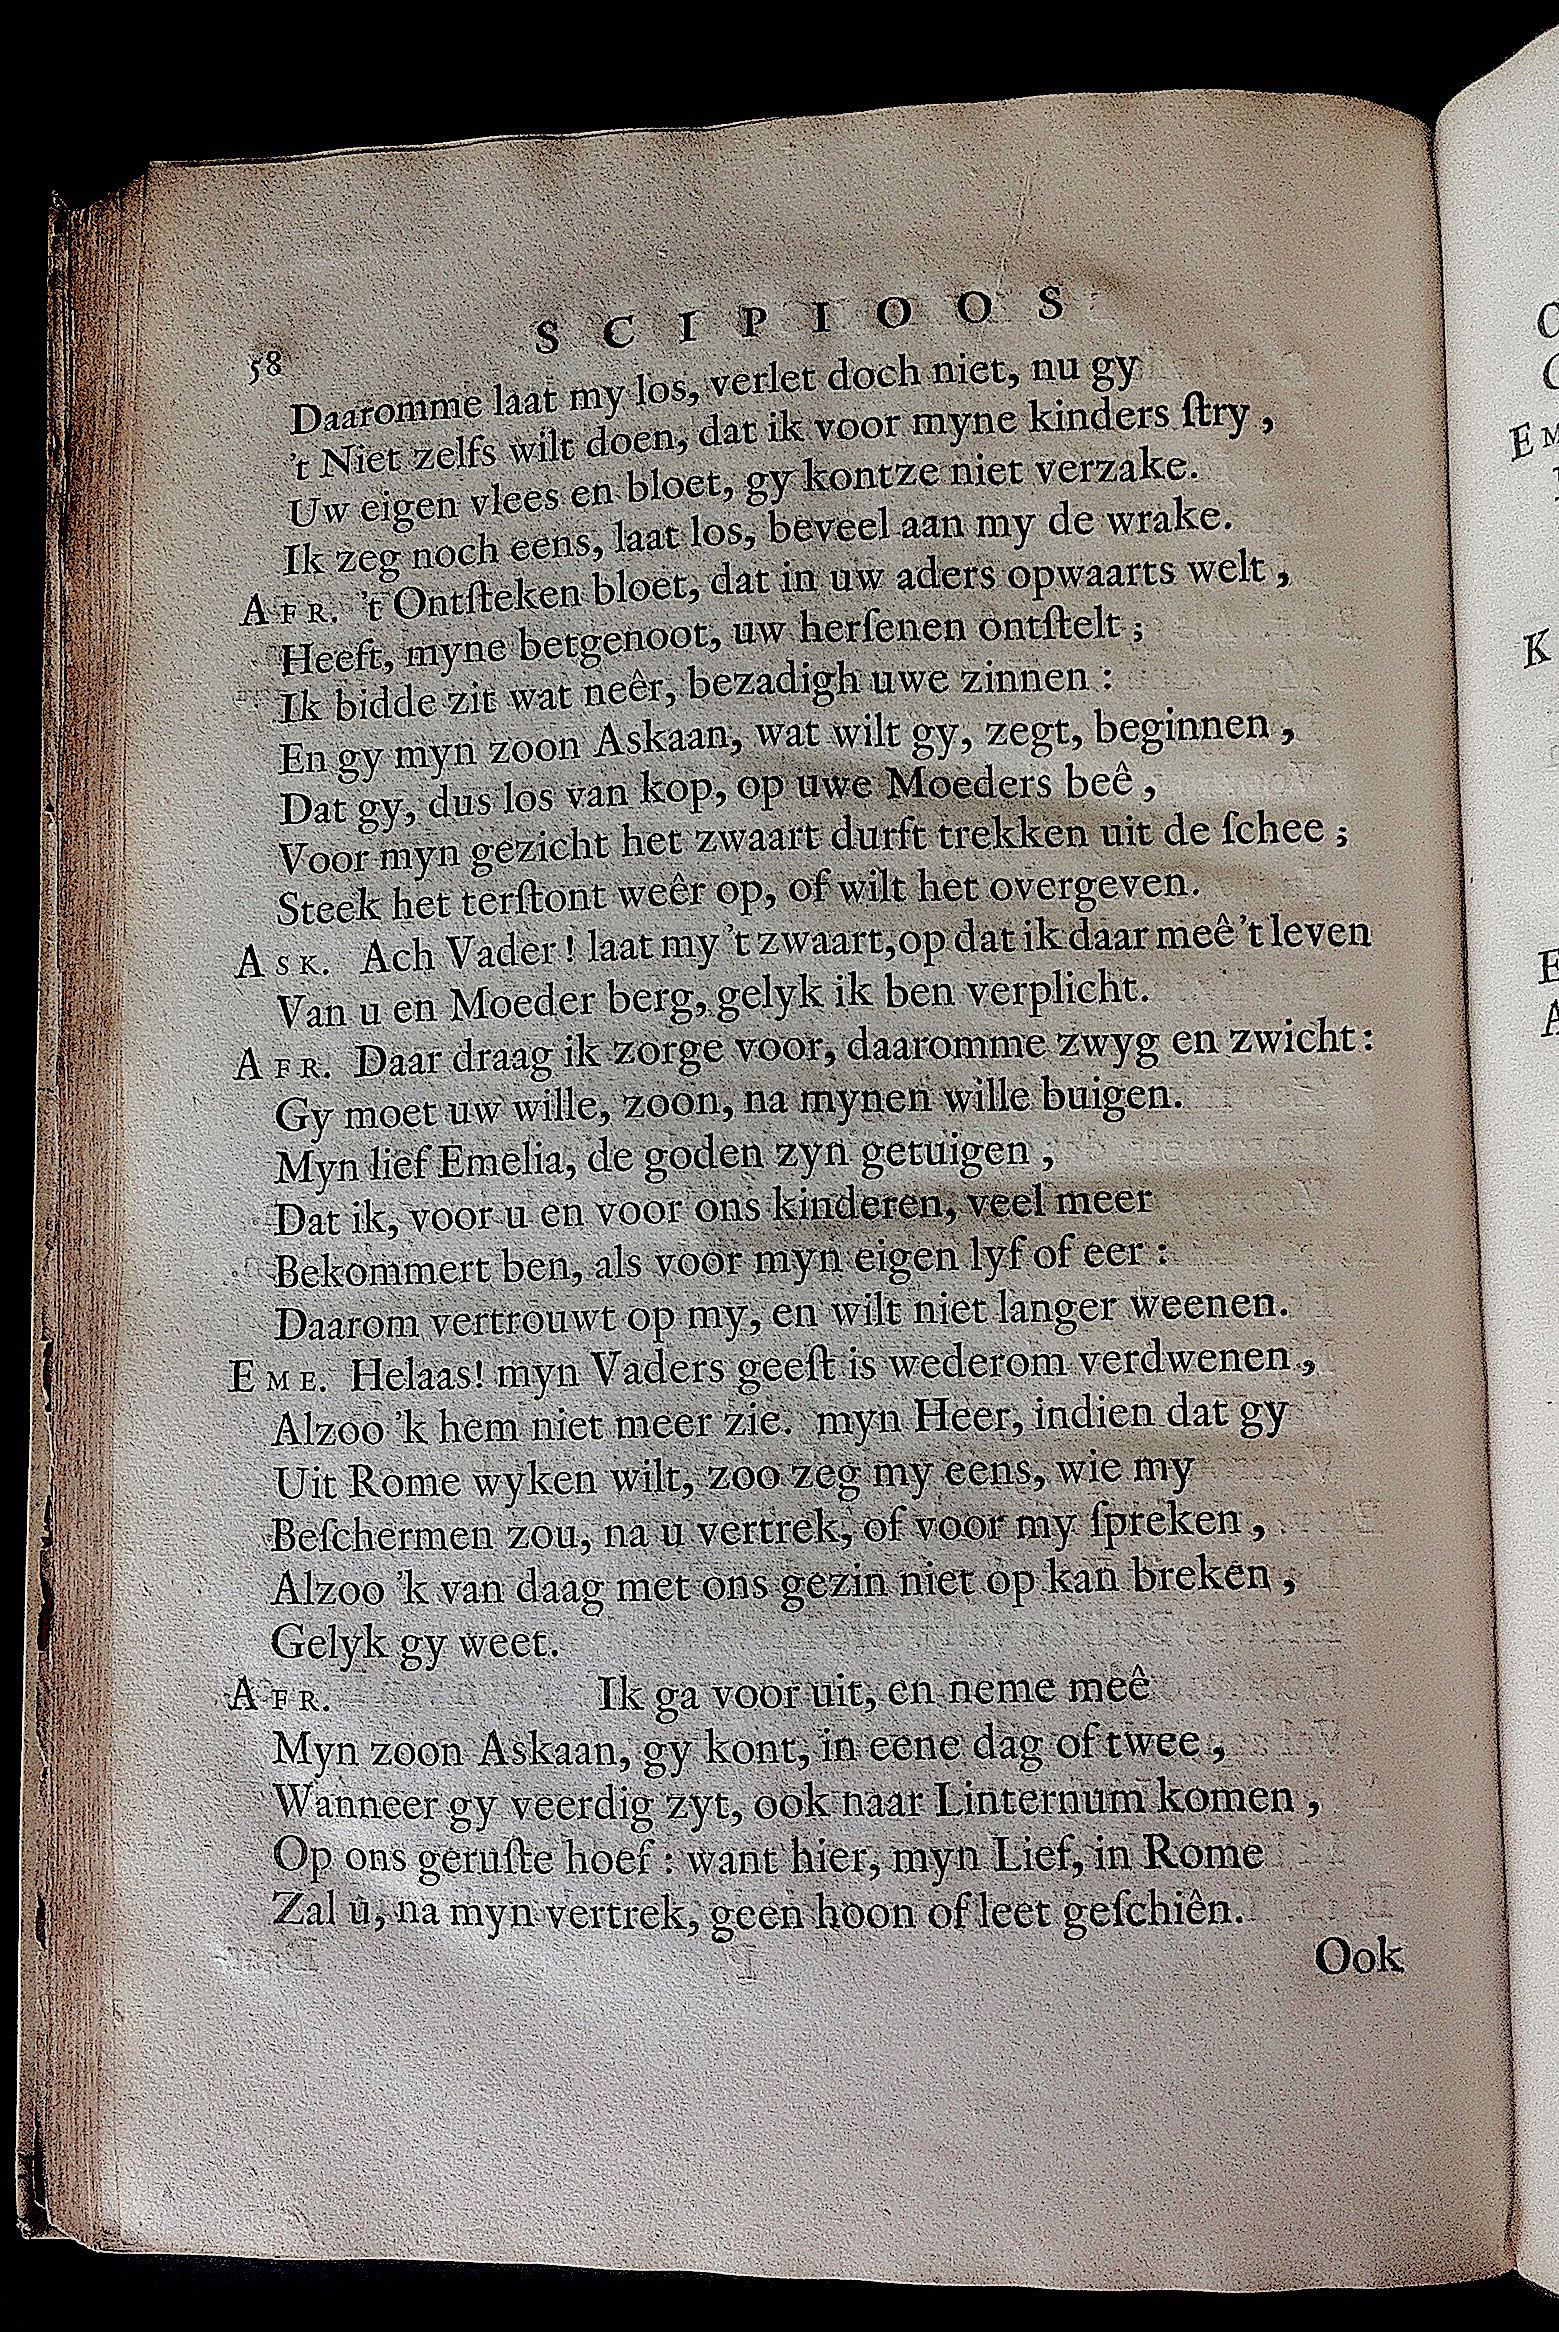 BoccardScipioFolio1658p58